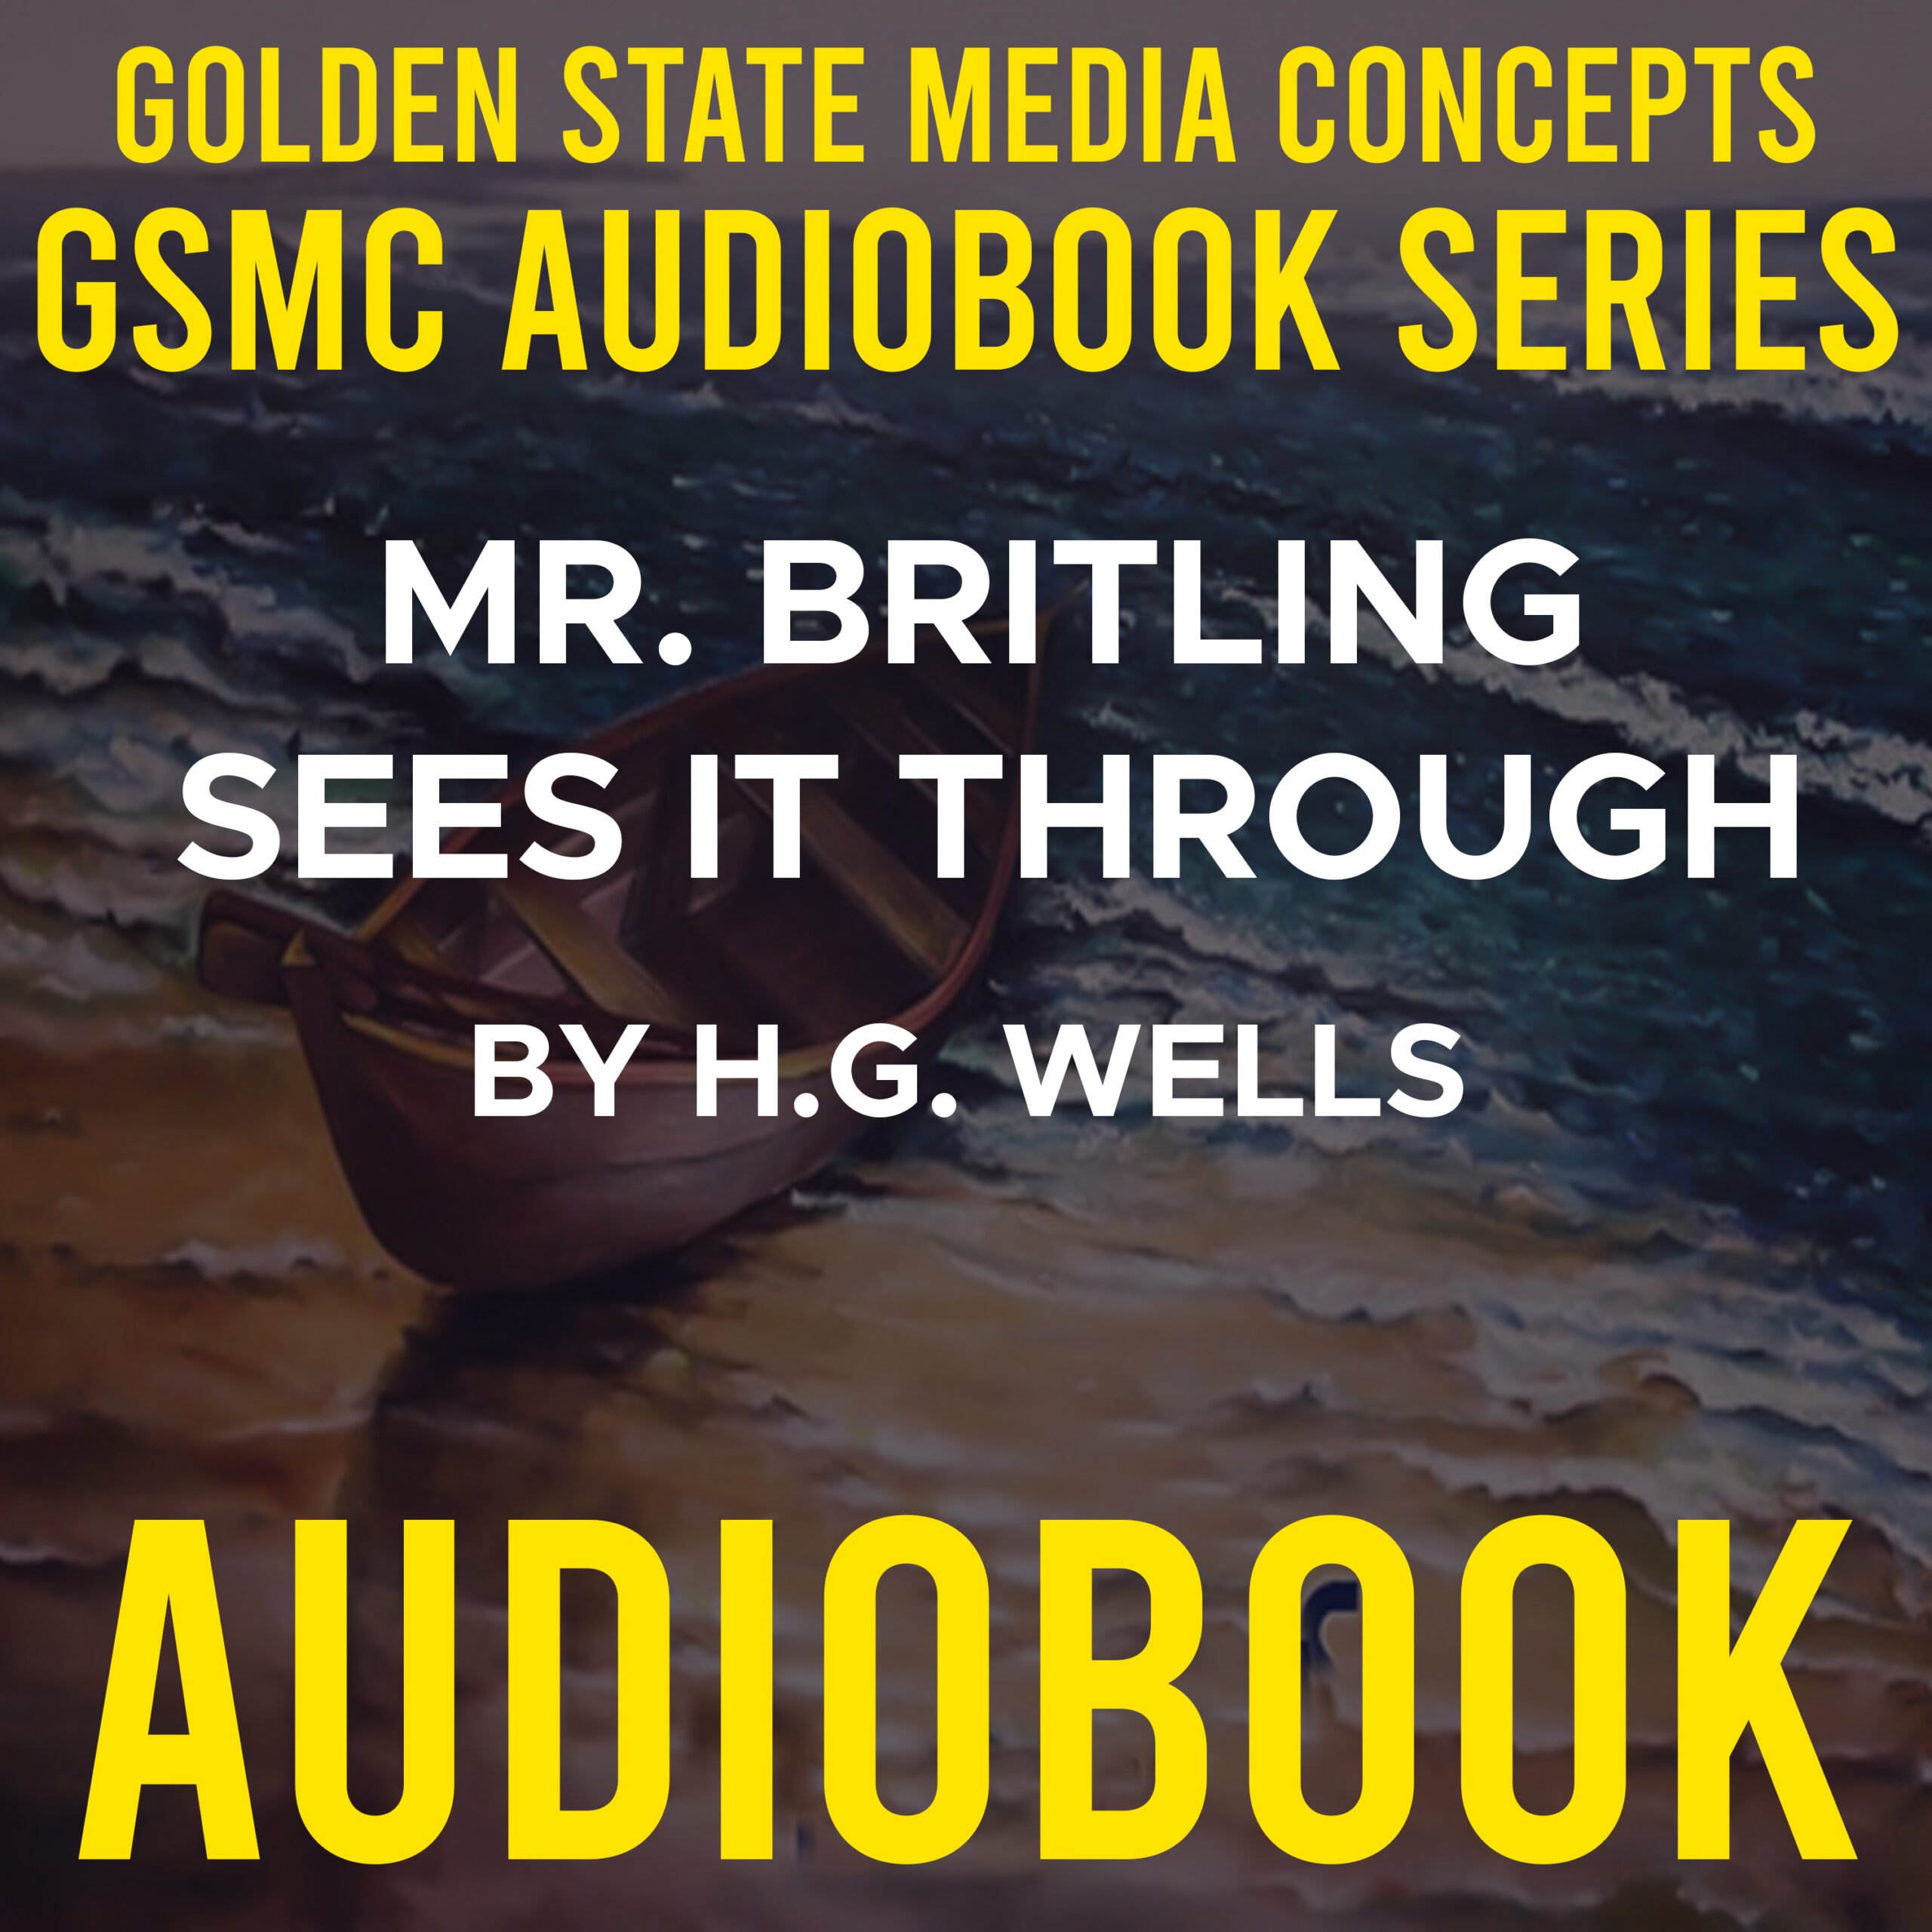 GSMC Audiobook Series: Mr. Britling Sees it Through